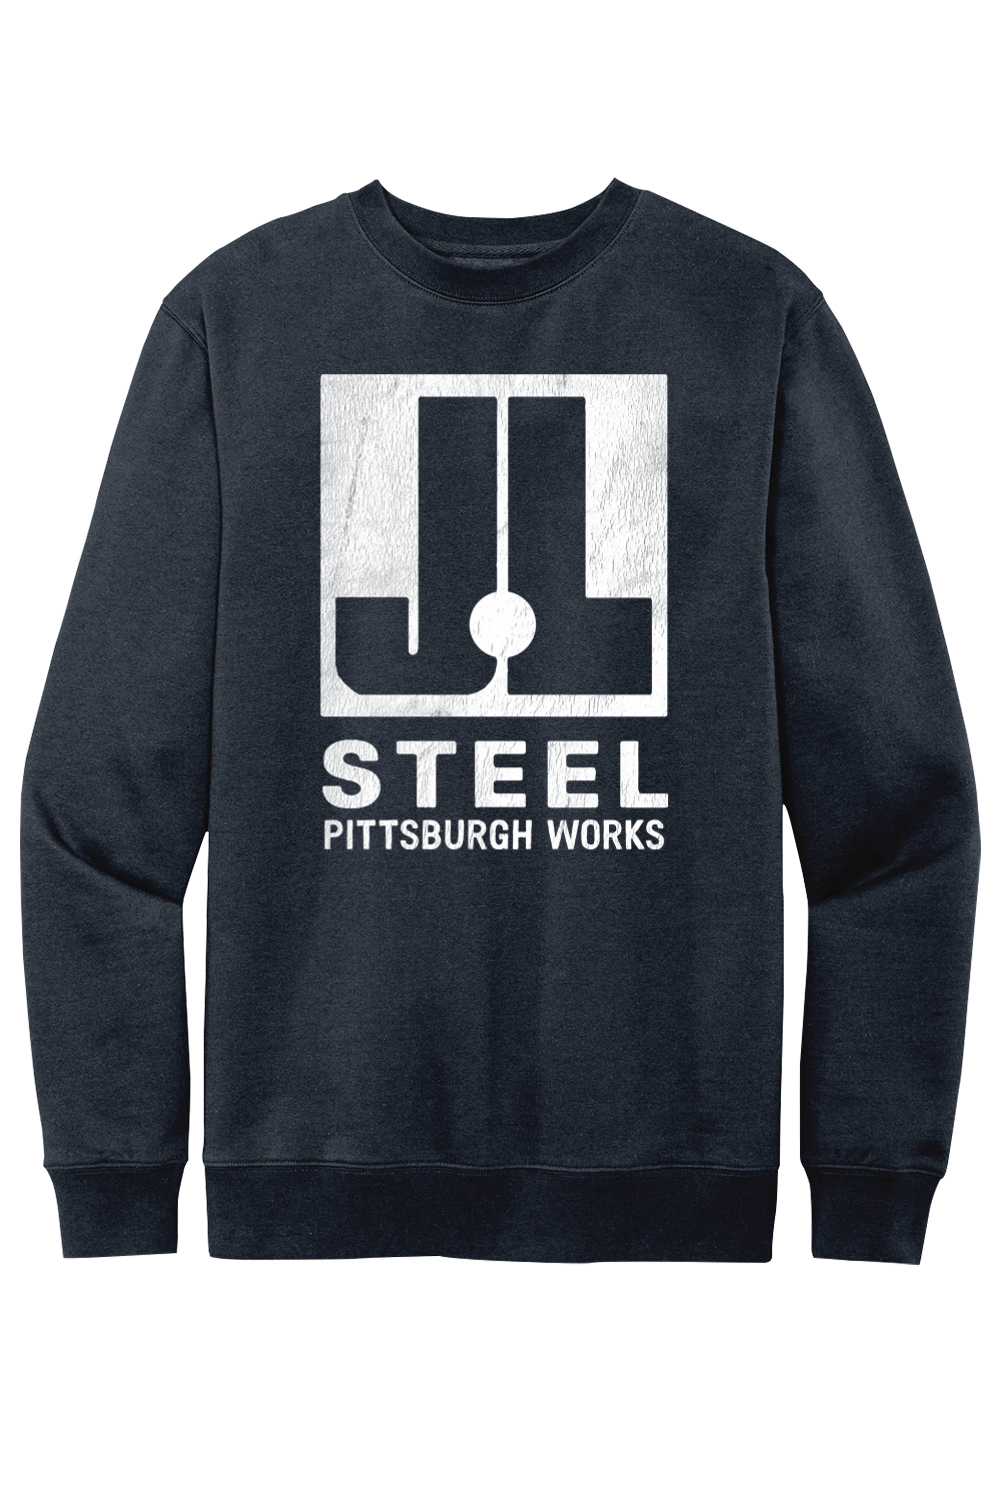 J&L Steel - Pittsburgh Works - Fleece Crew Sweatshirt - Yinzylvania